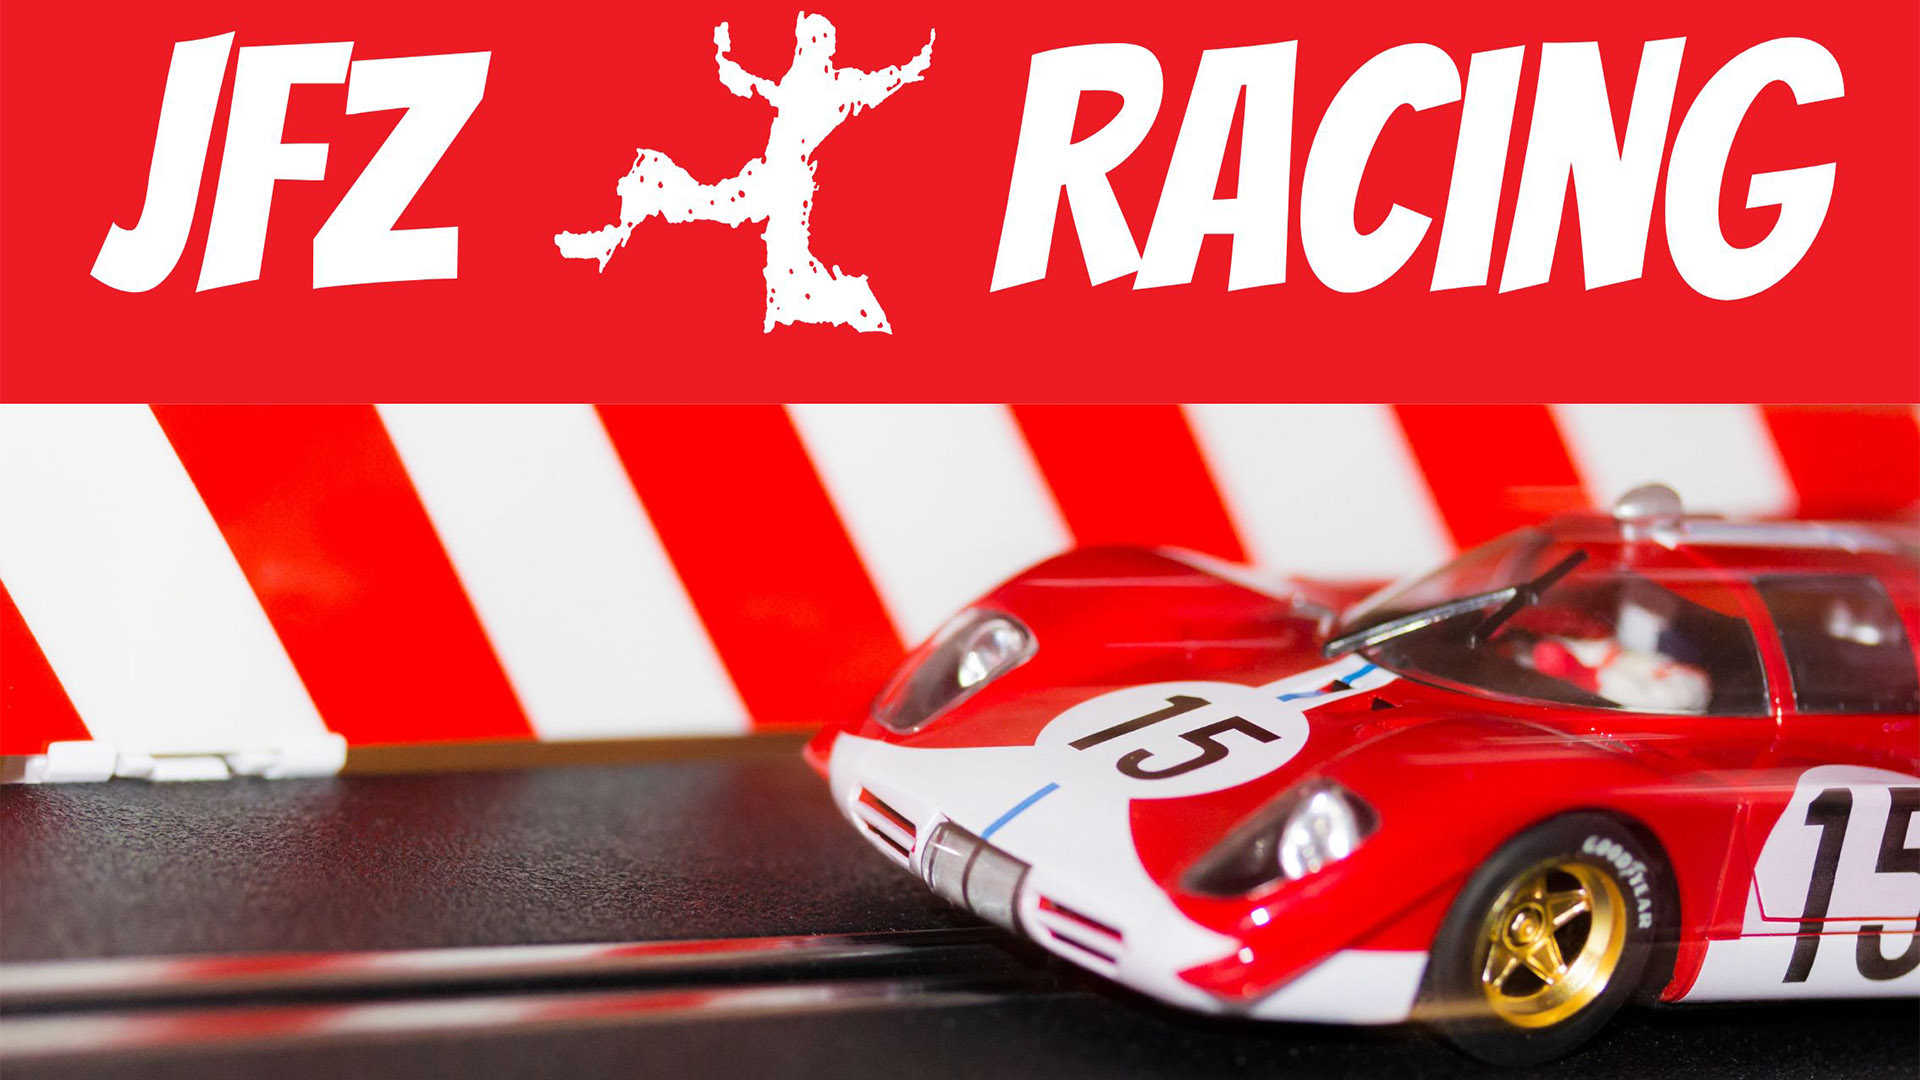 Hinter einen roten Carrera-Rennwagen liest man an der Bande JFZ Racing